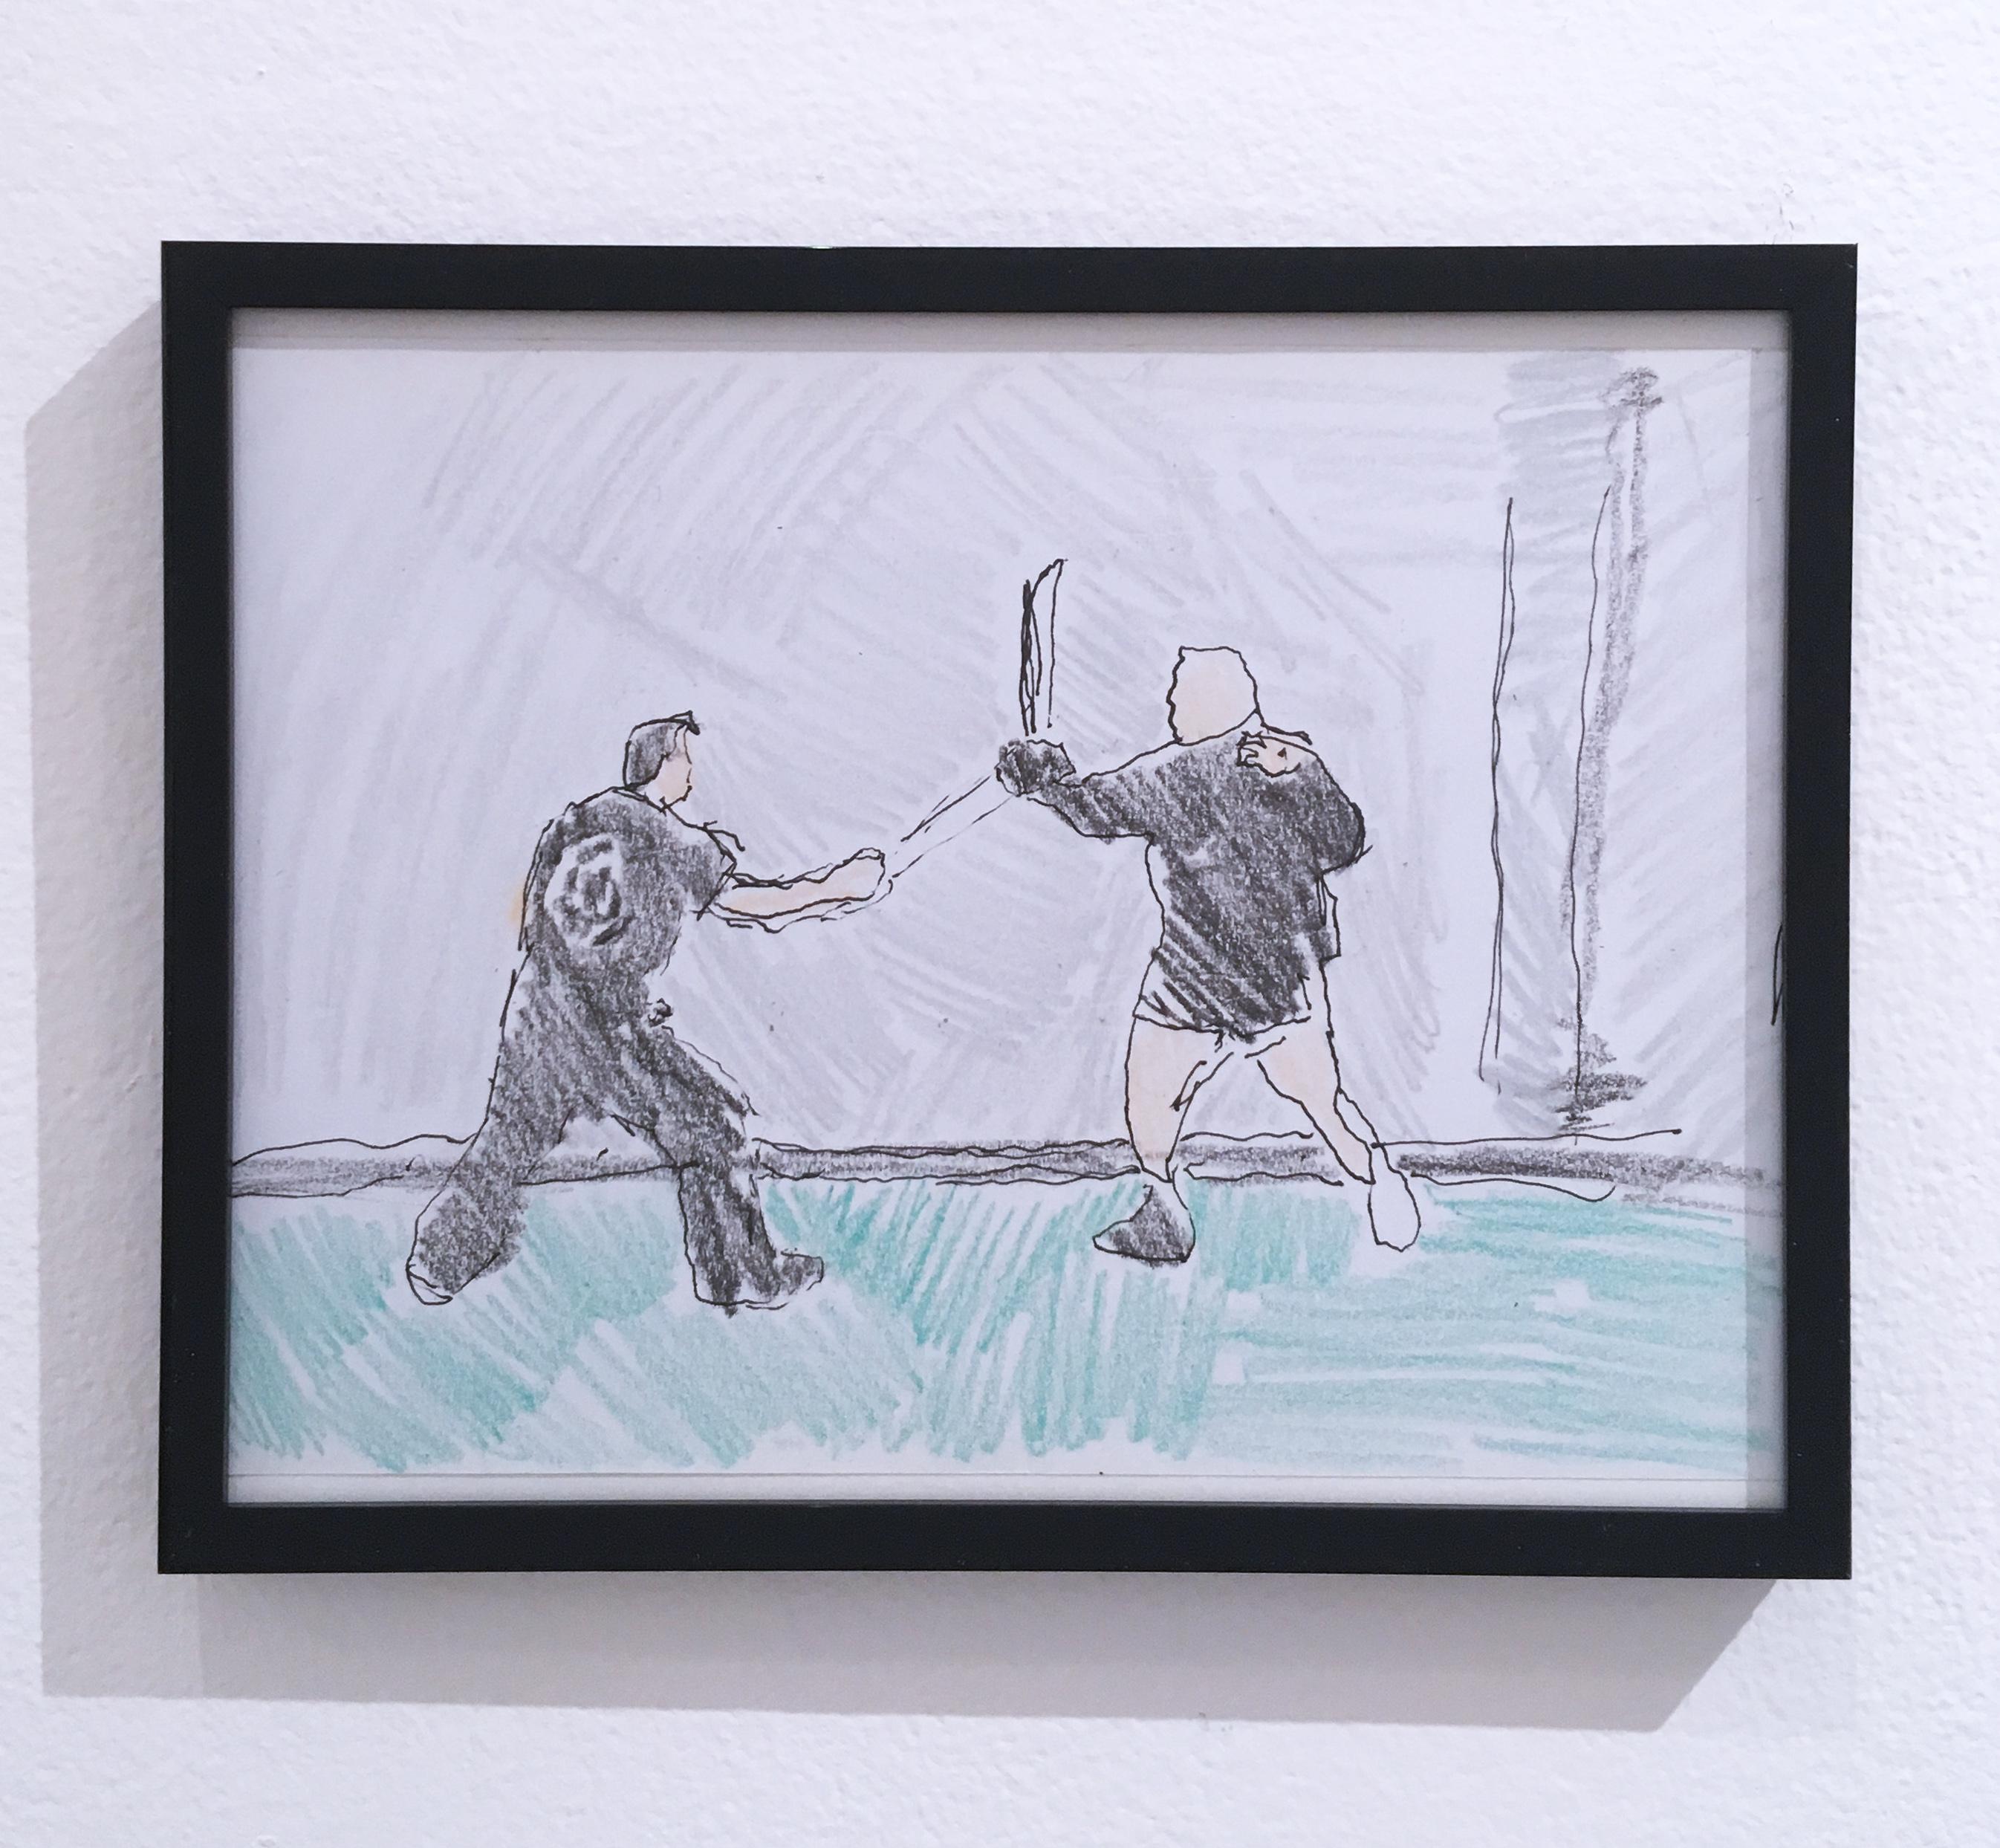 Figurative Painting Macauley Norman - Sword Fight, 2018, stylo et crayon sur papier, figuratif, dessin, encadré